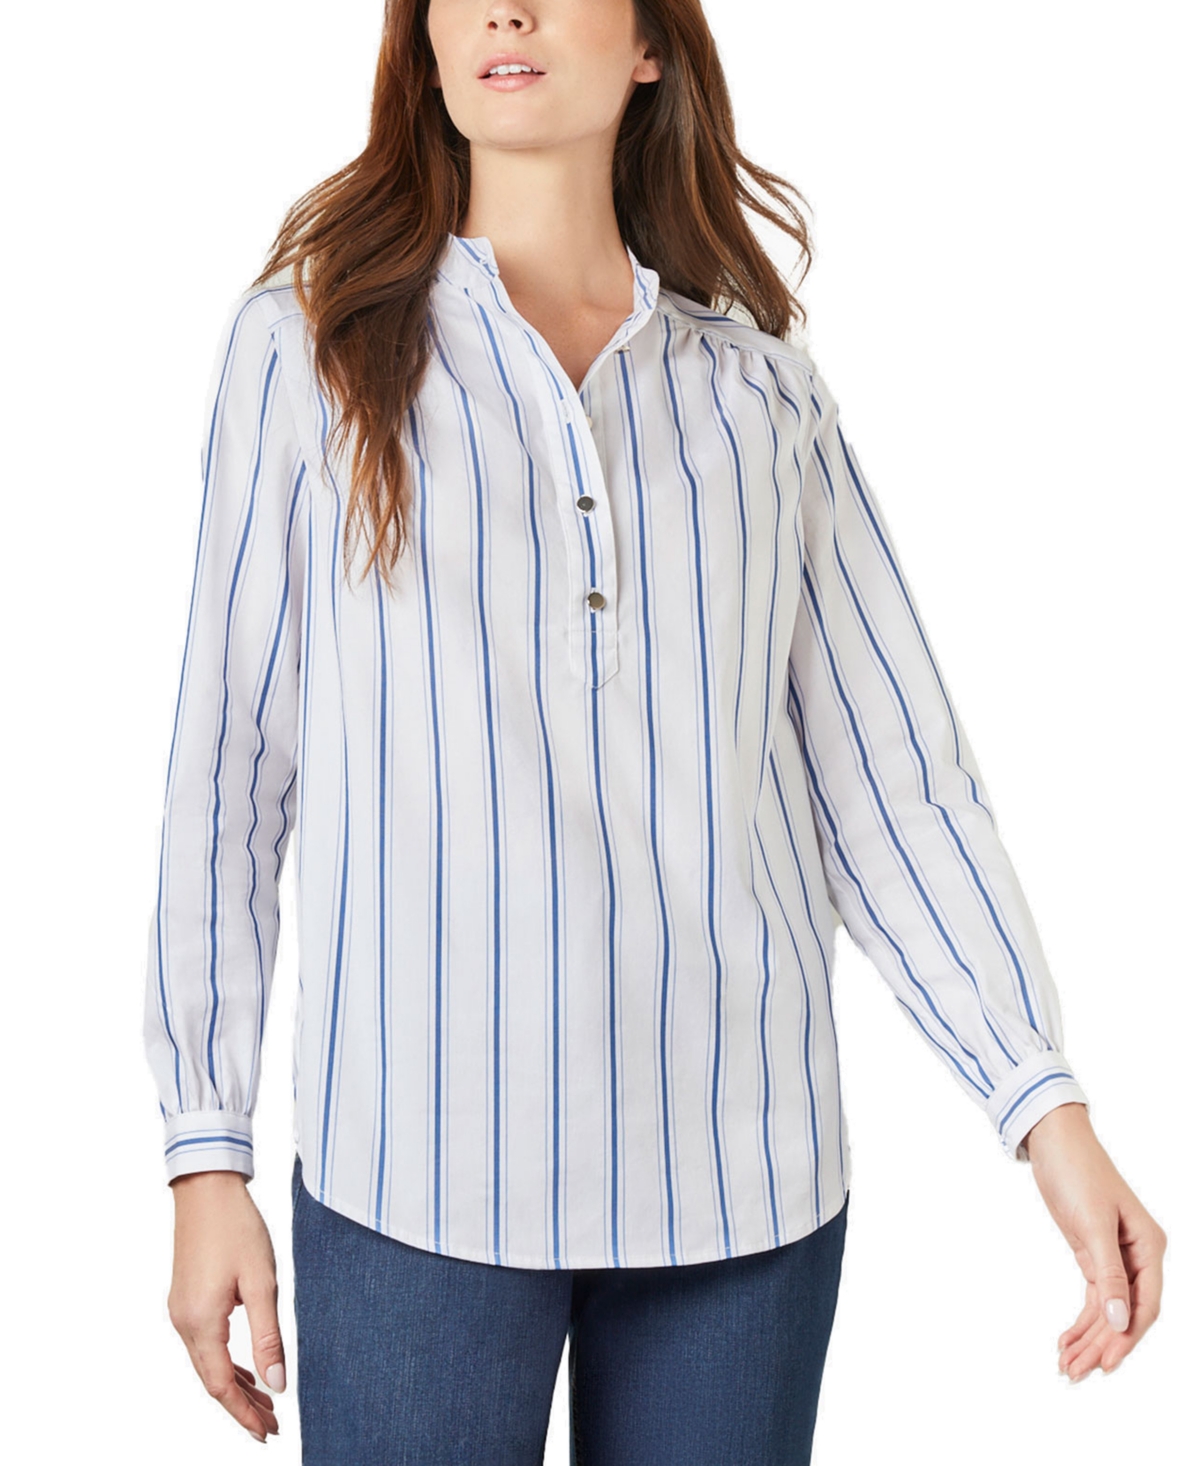 Women's Striped Poplin Relaxed-Fit Shirt - Multi